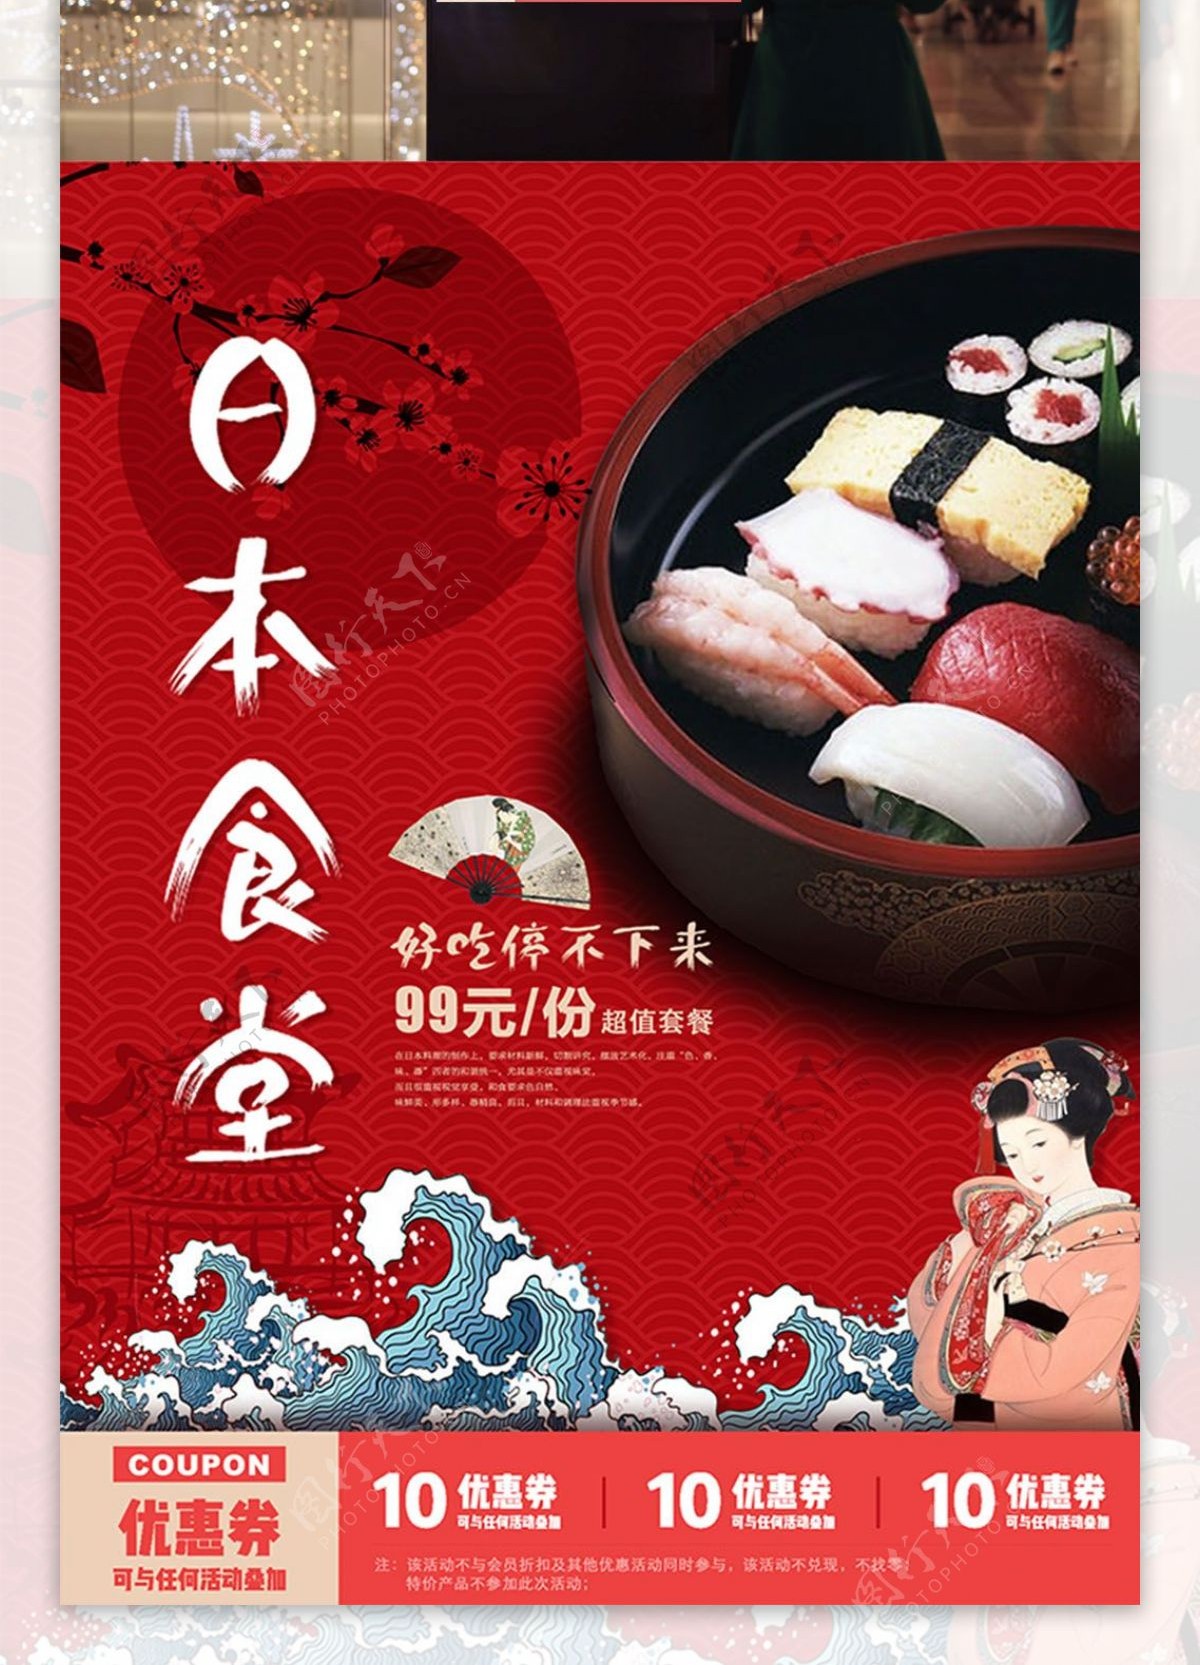 日本食堂餐馆美食宣传促销海报